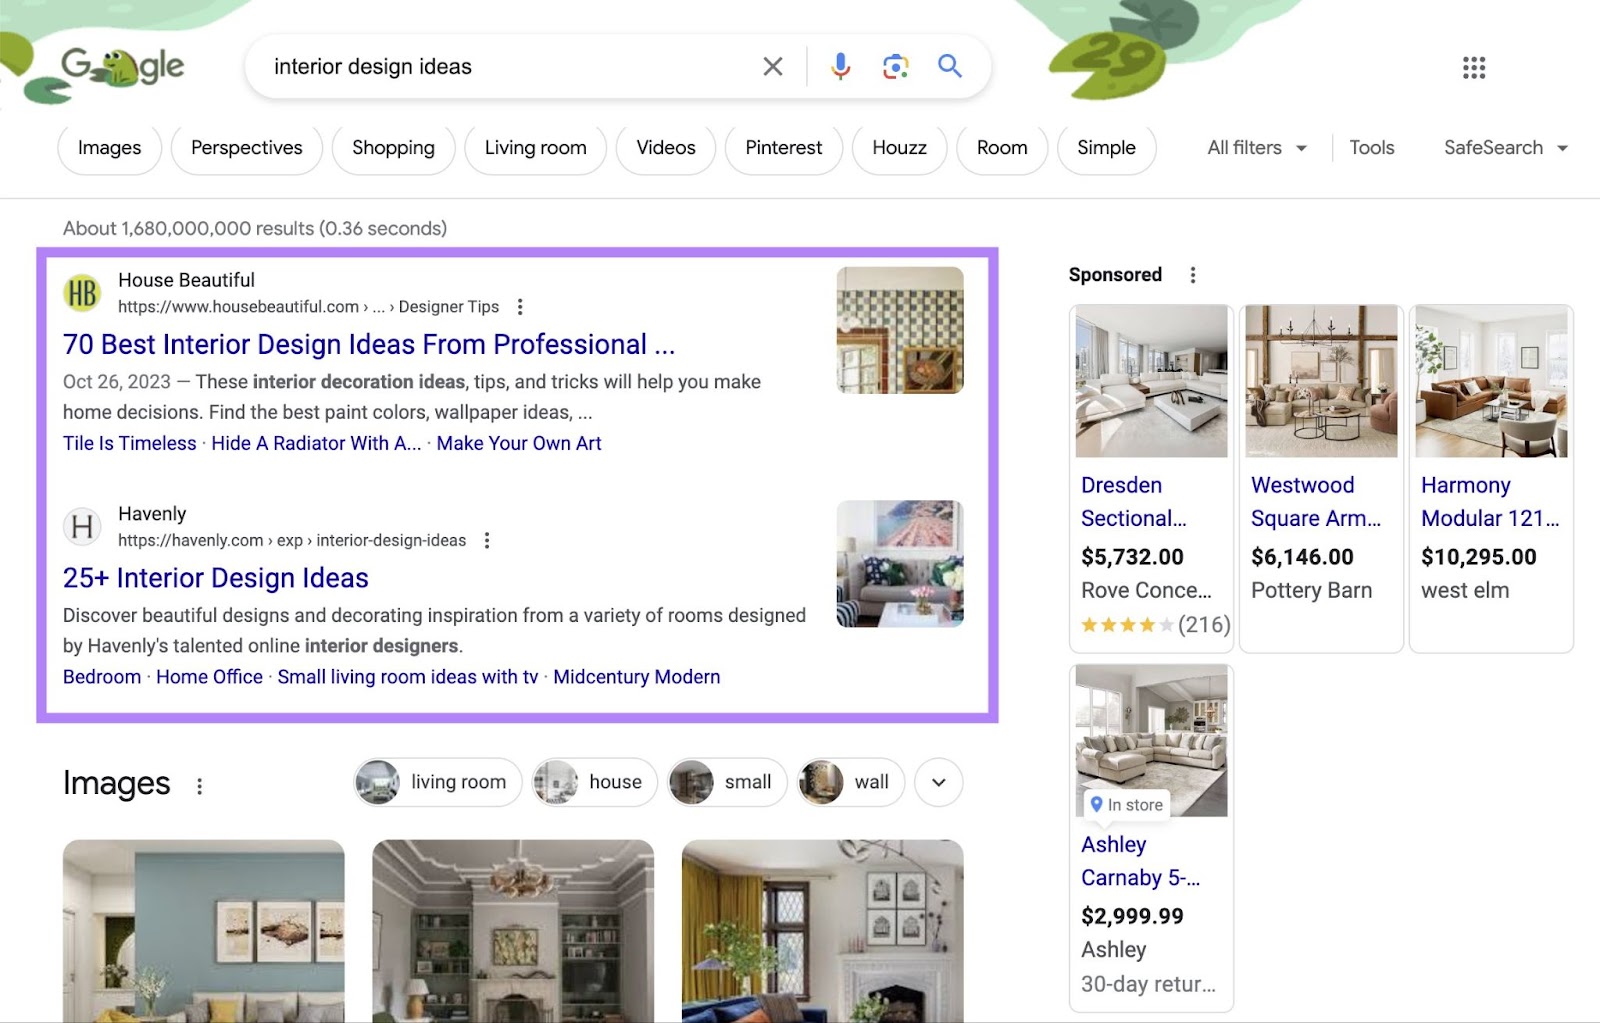 Top of Google SERP for "interior design ideas! query